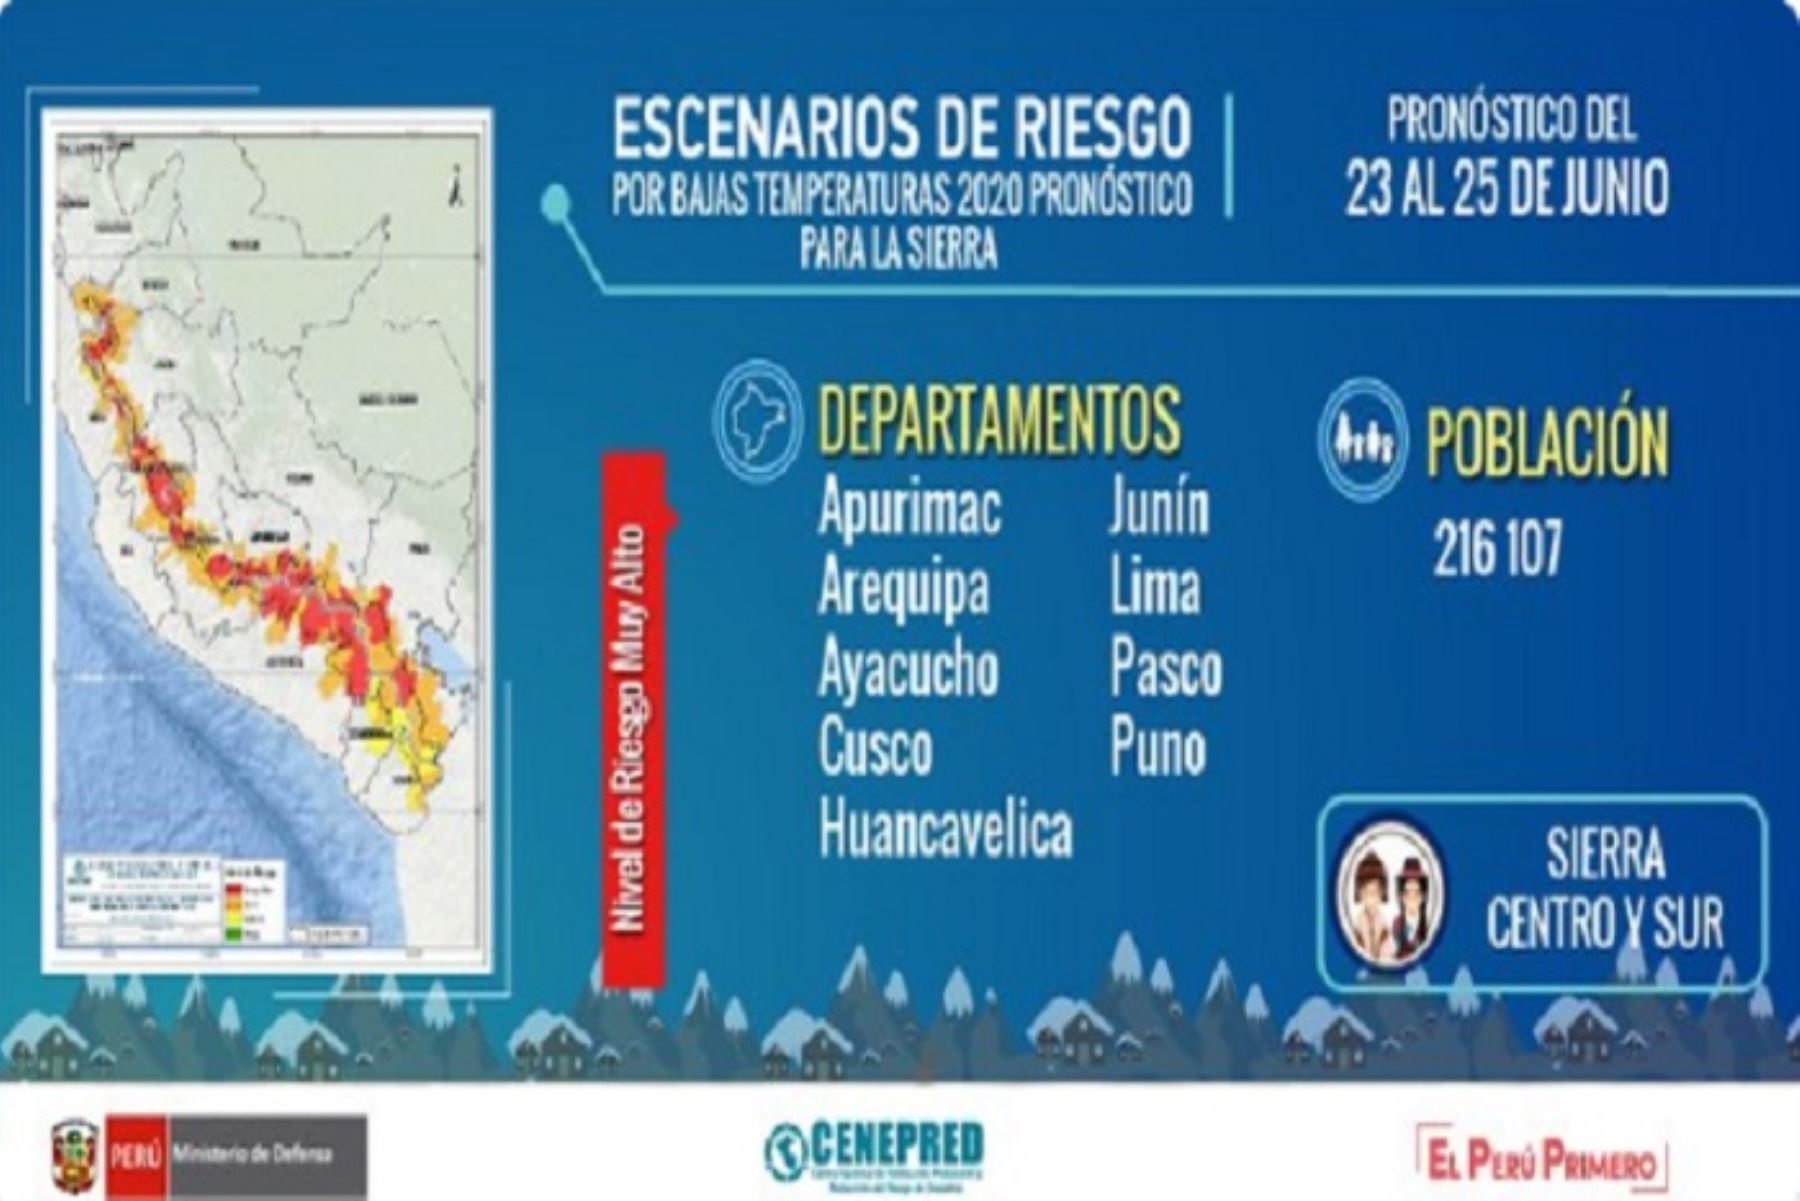 Arequipa es el departamento más comprometido en este aspecto, puesto que presenta 13 jurisdicciones con riesgo muy alto